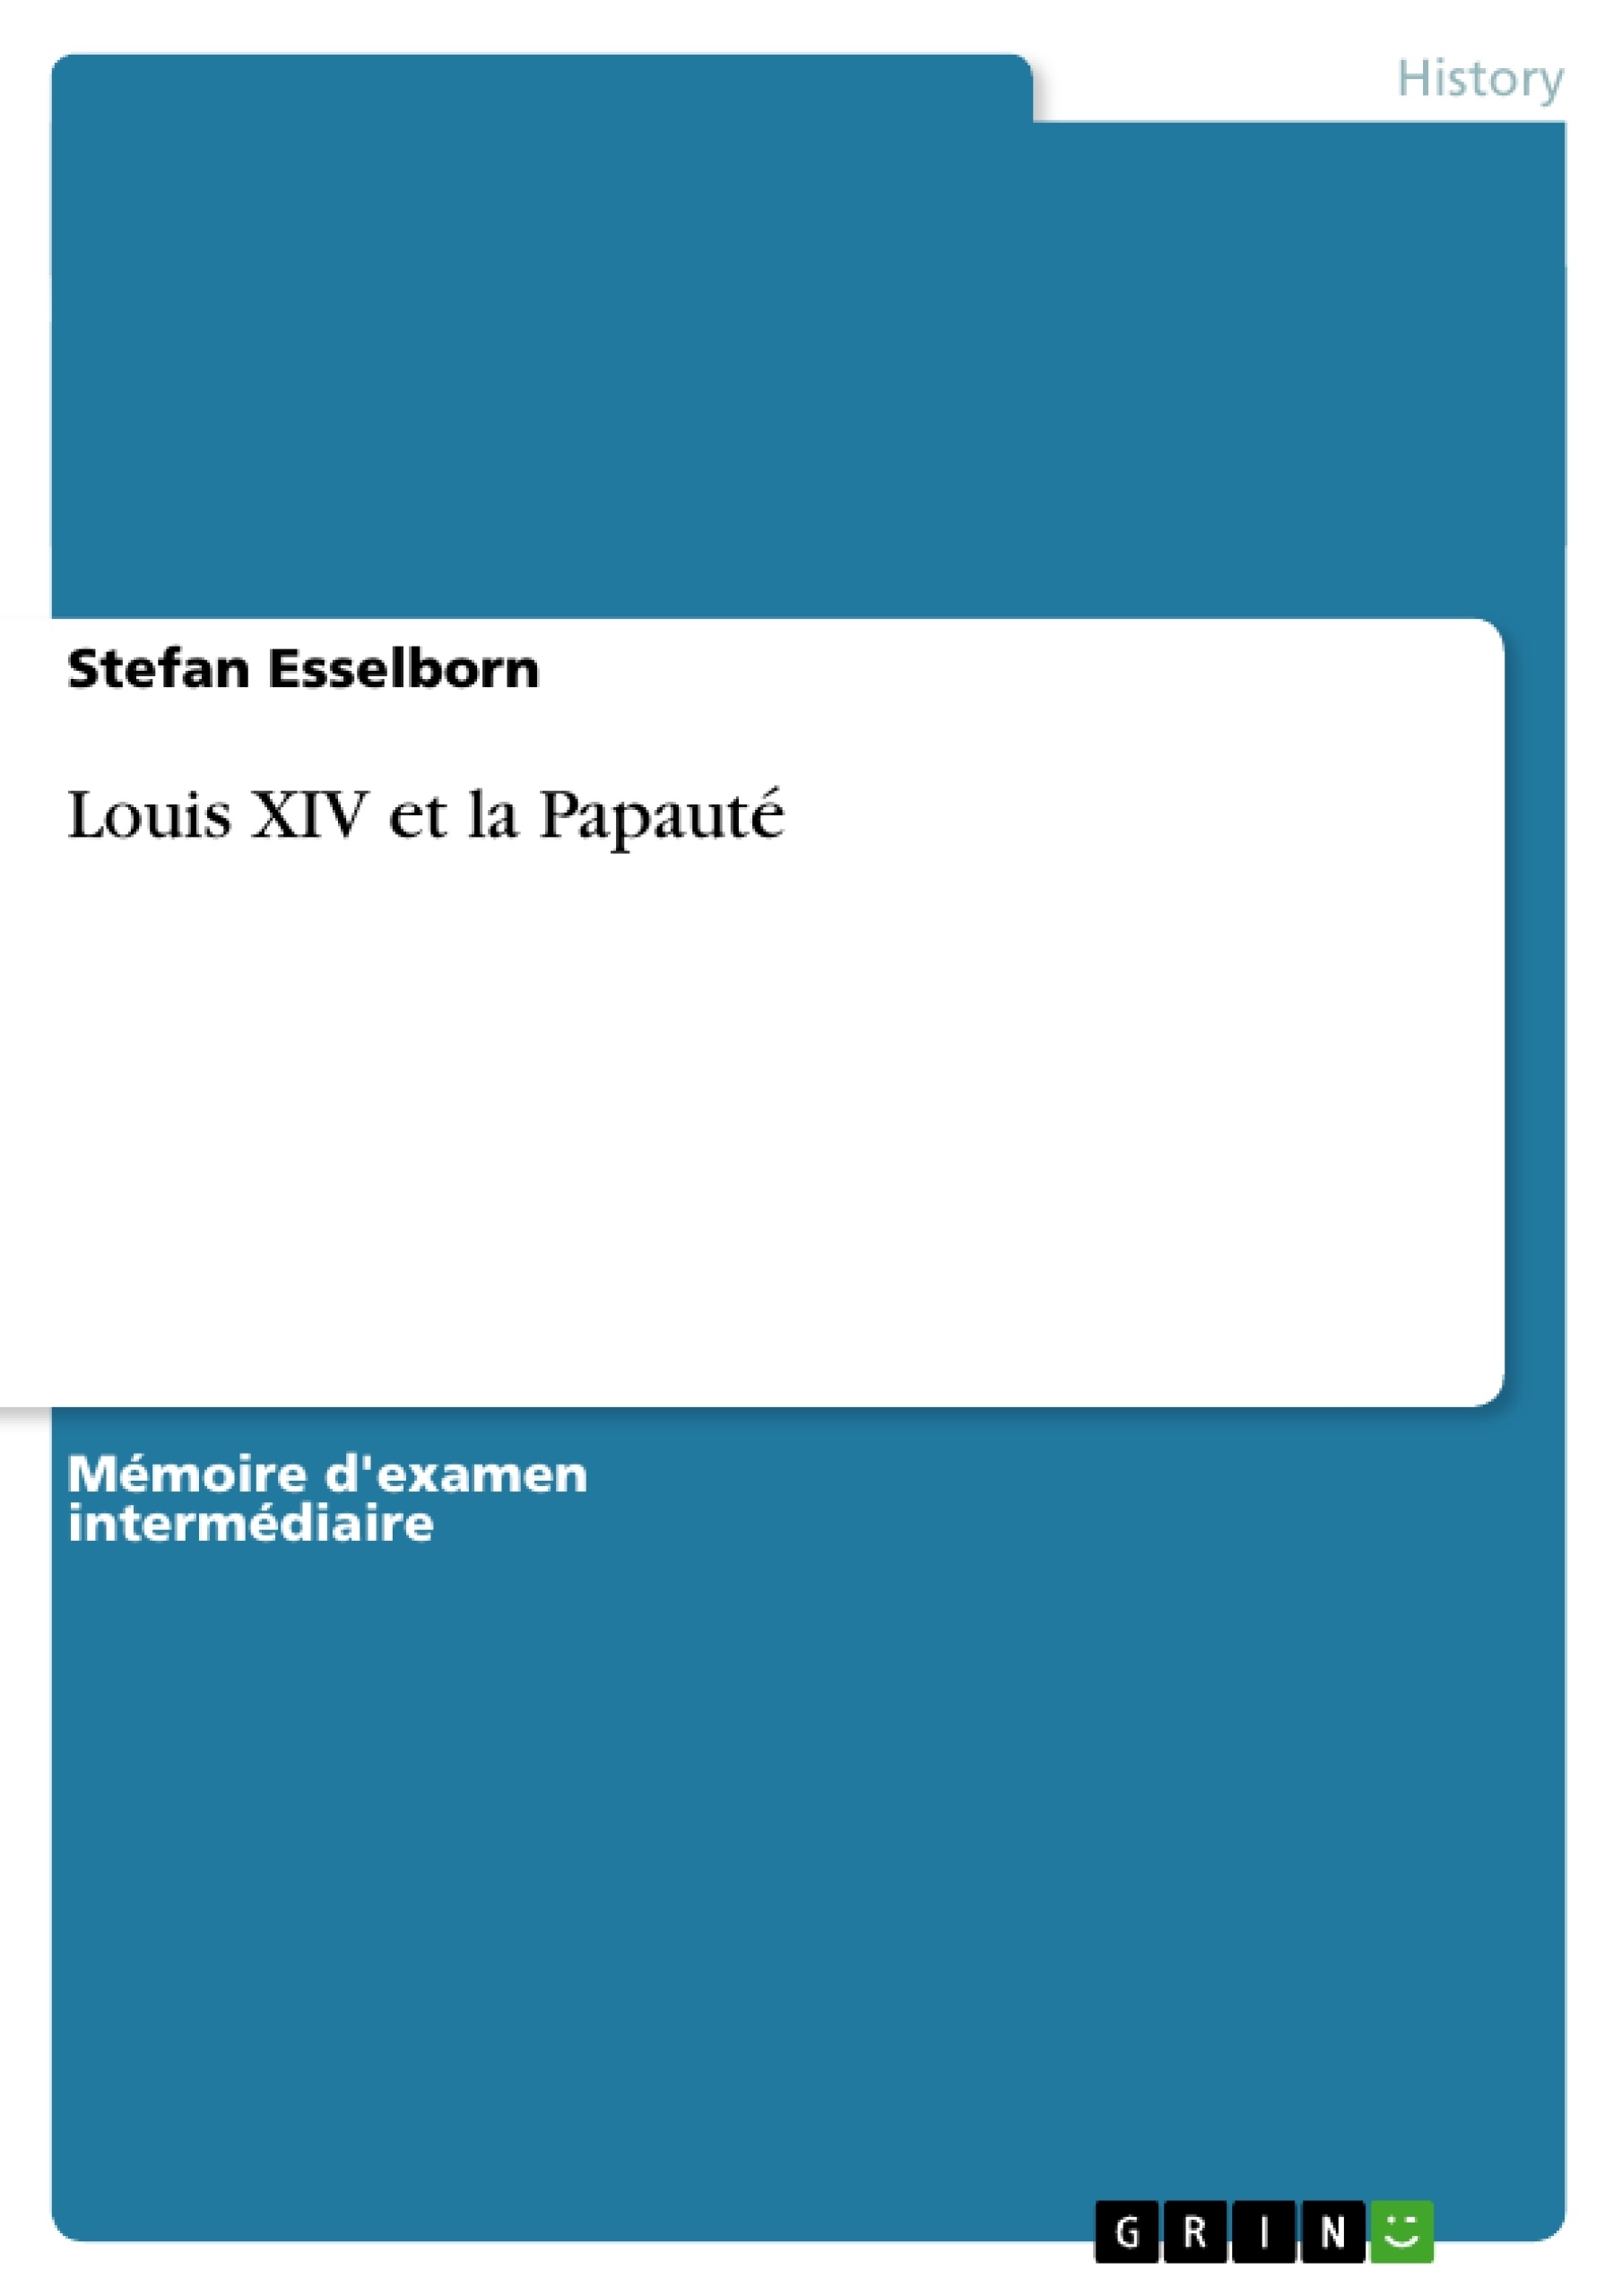 Título: Louis XIV et la Papauté